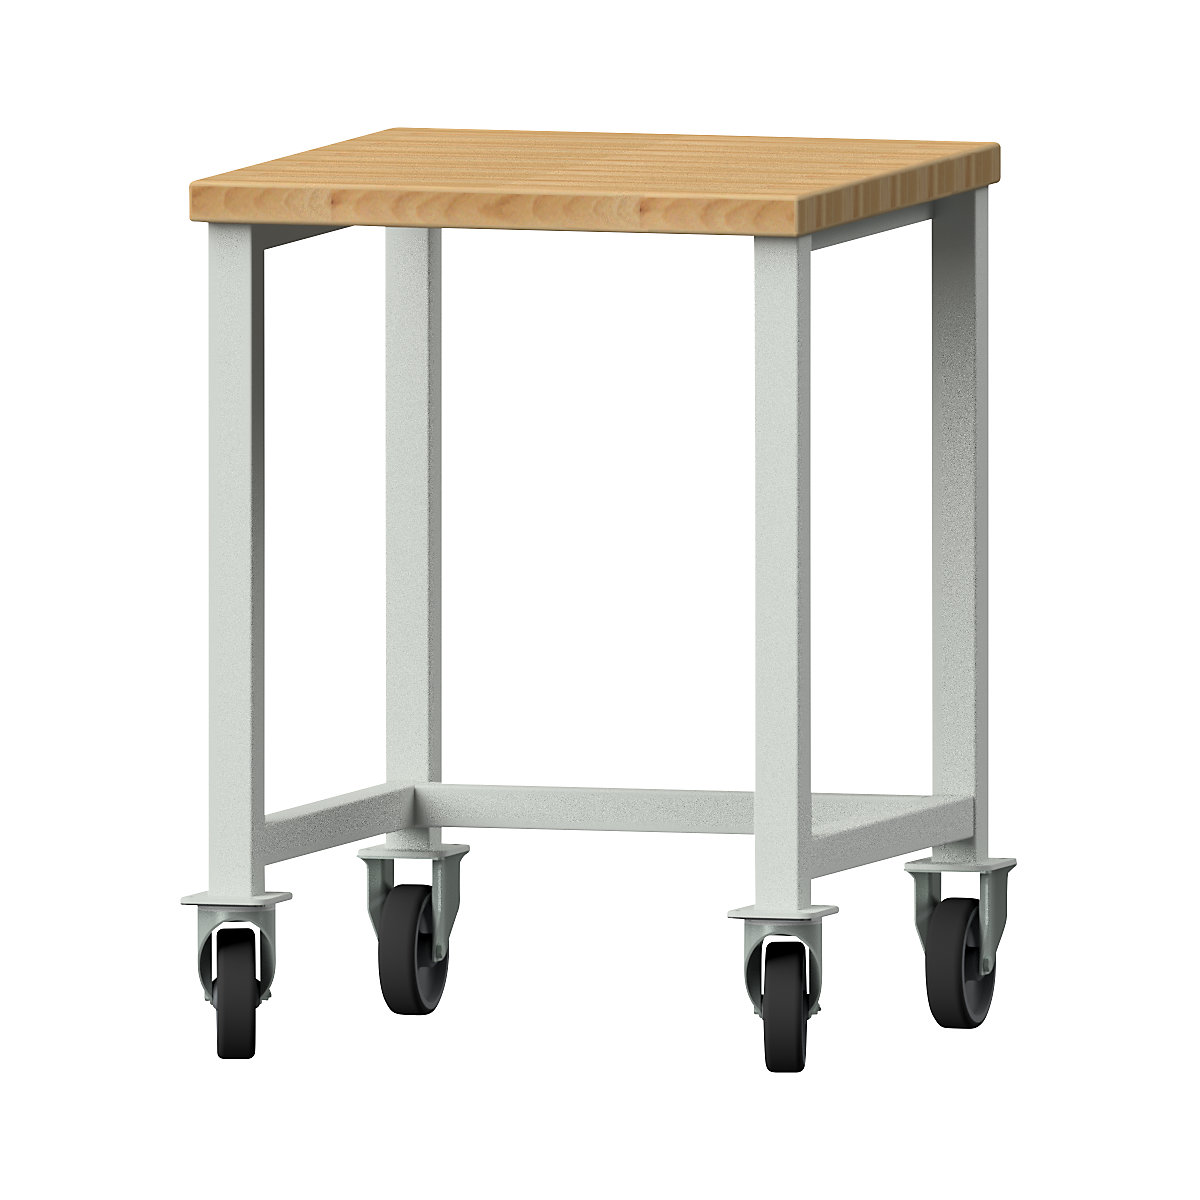 Kompaktowy stół warsztatowy – ANKE, szer. 605 mm, bez szafek dolnych, ruchomy-4